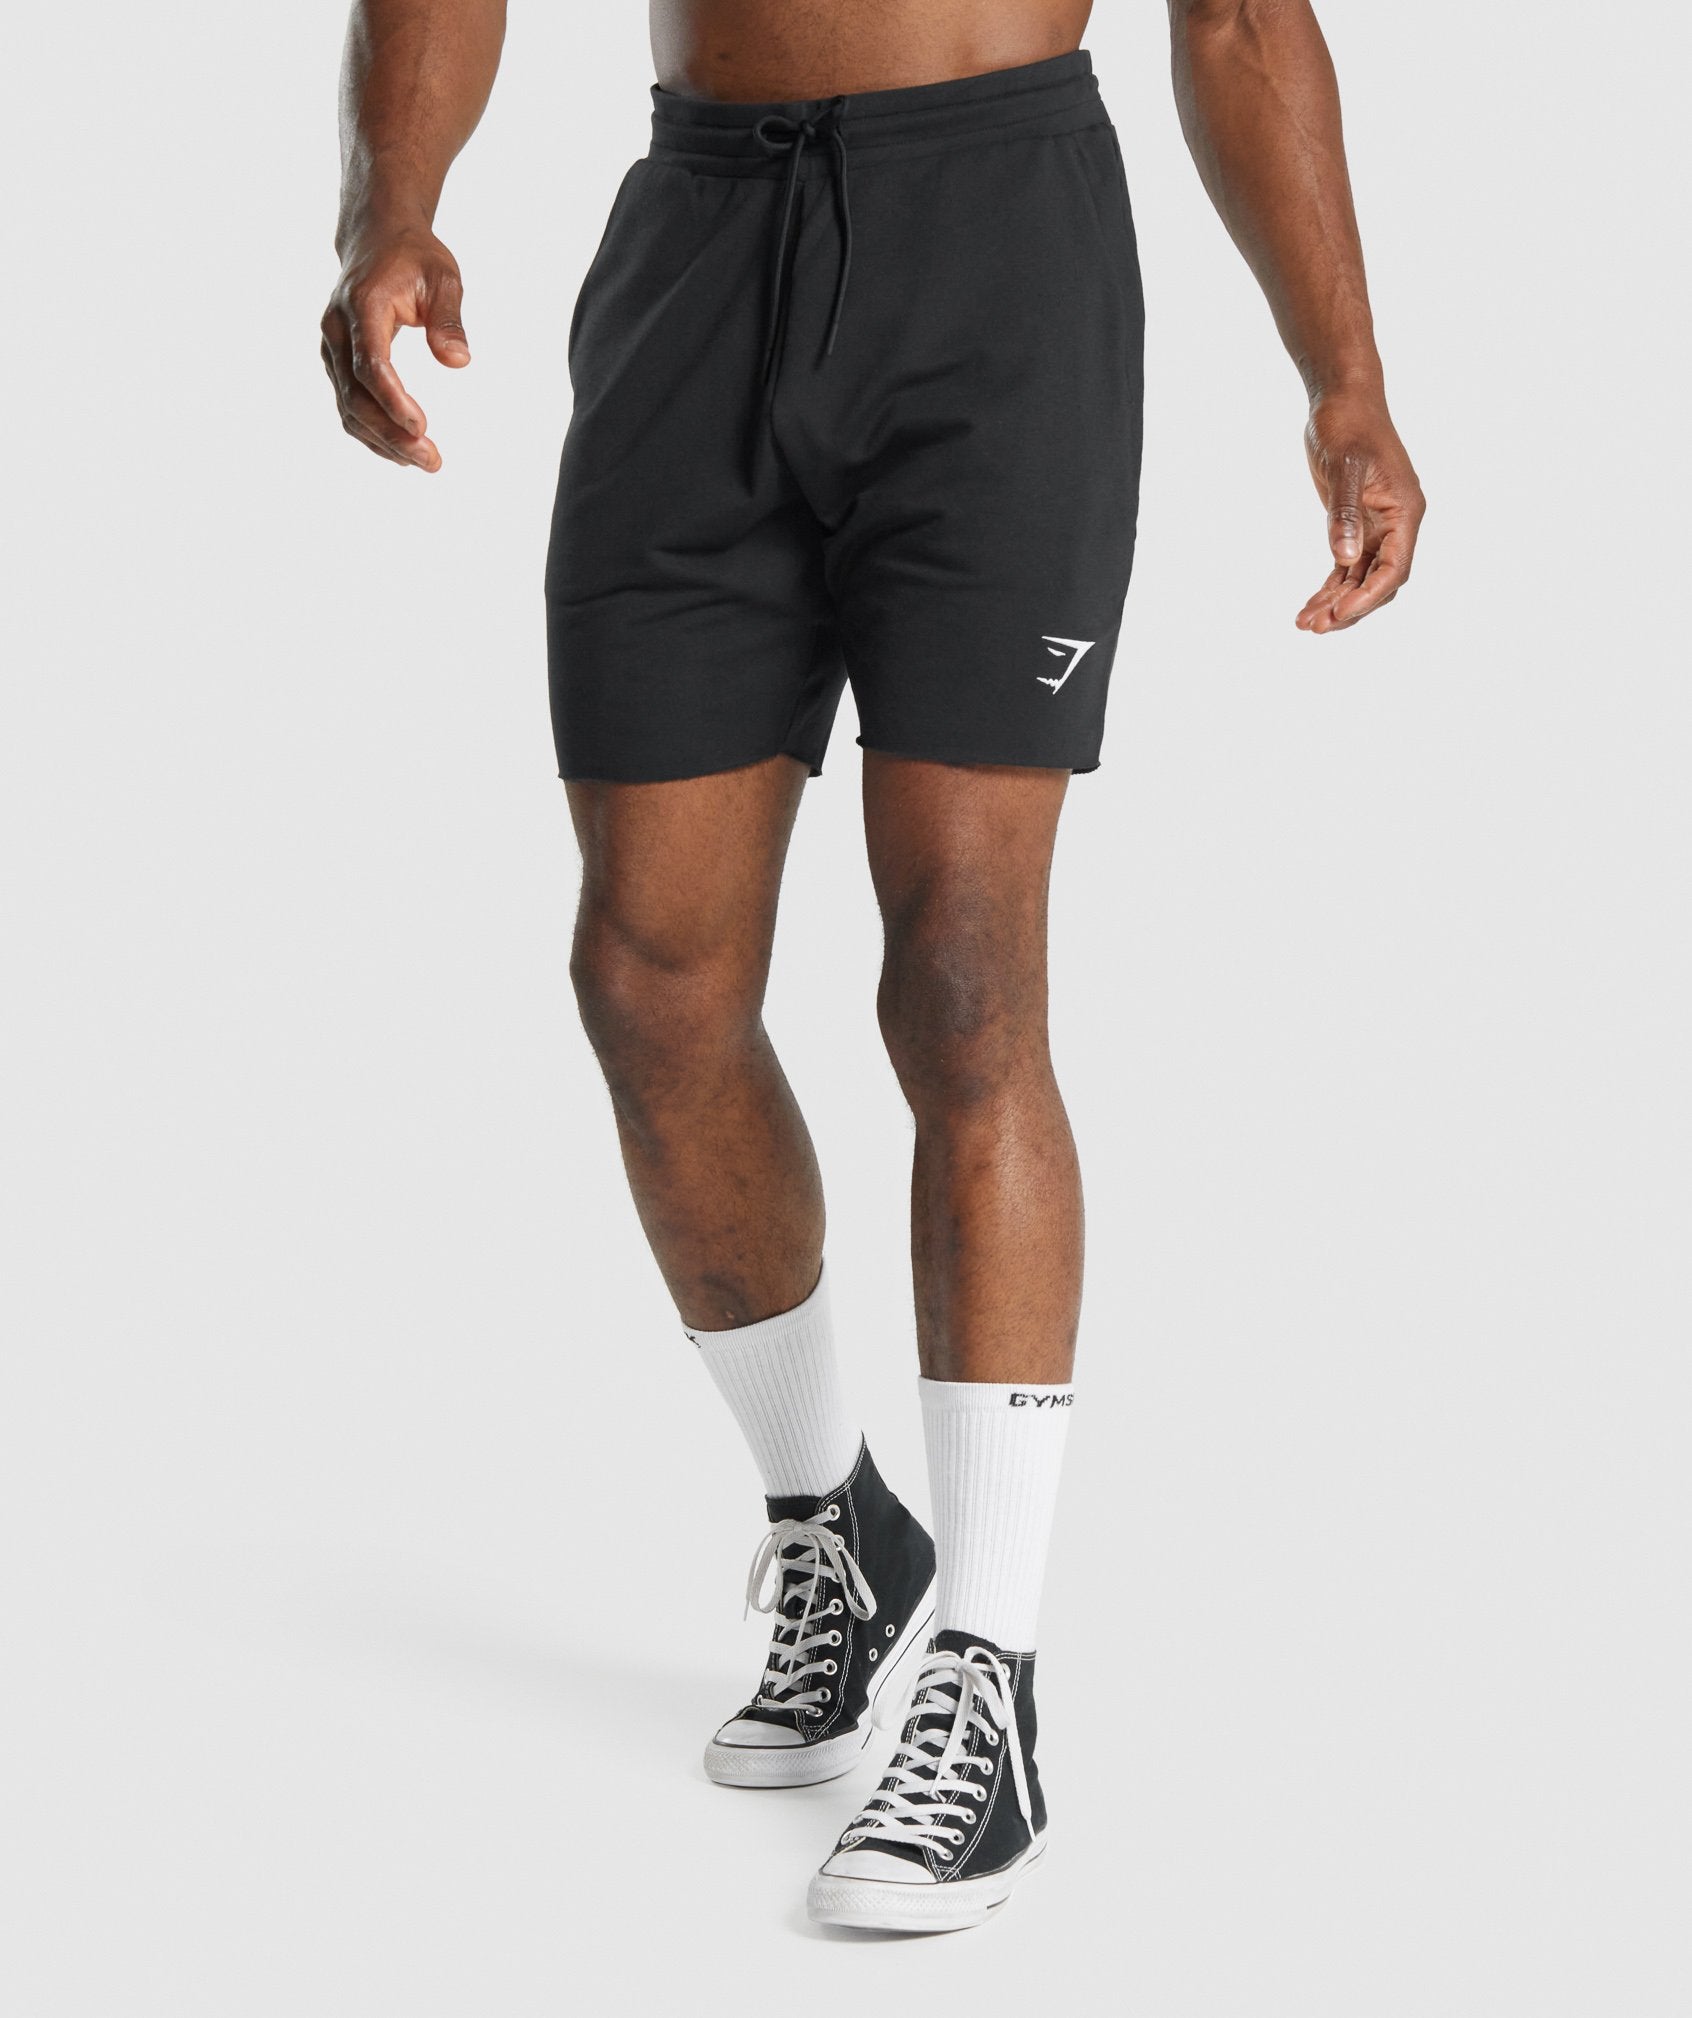 Shorts de sport pour homme - Shorts running et musculation – Fitgearparis